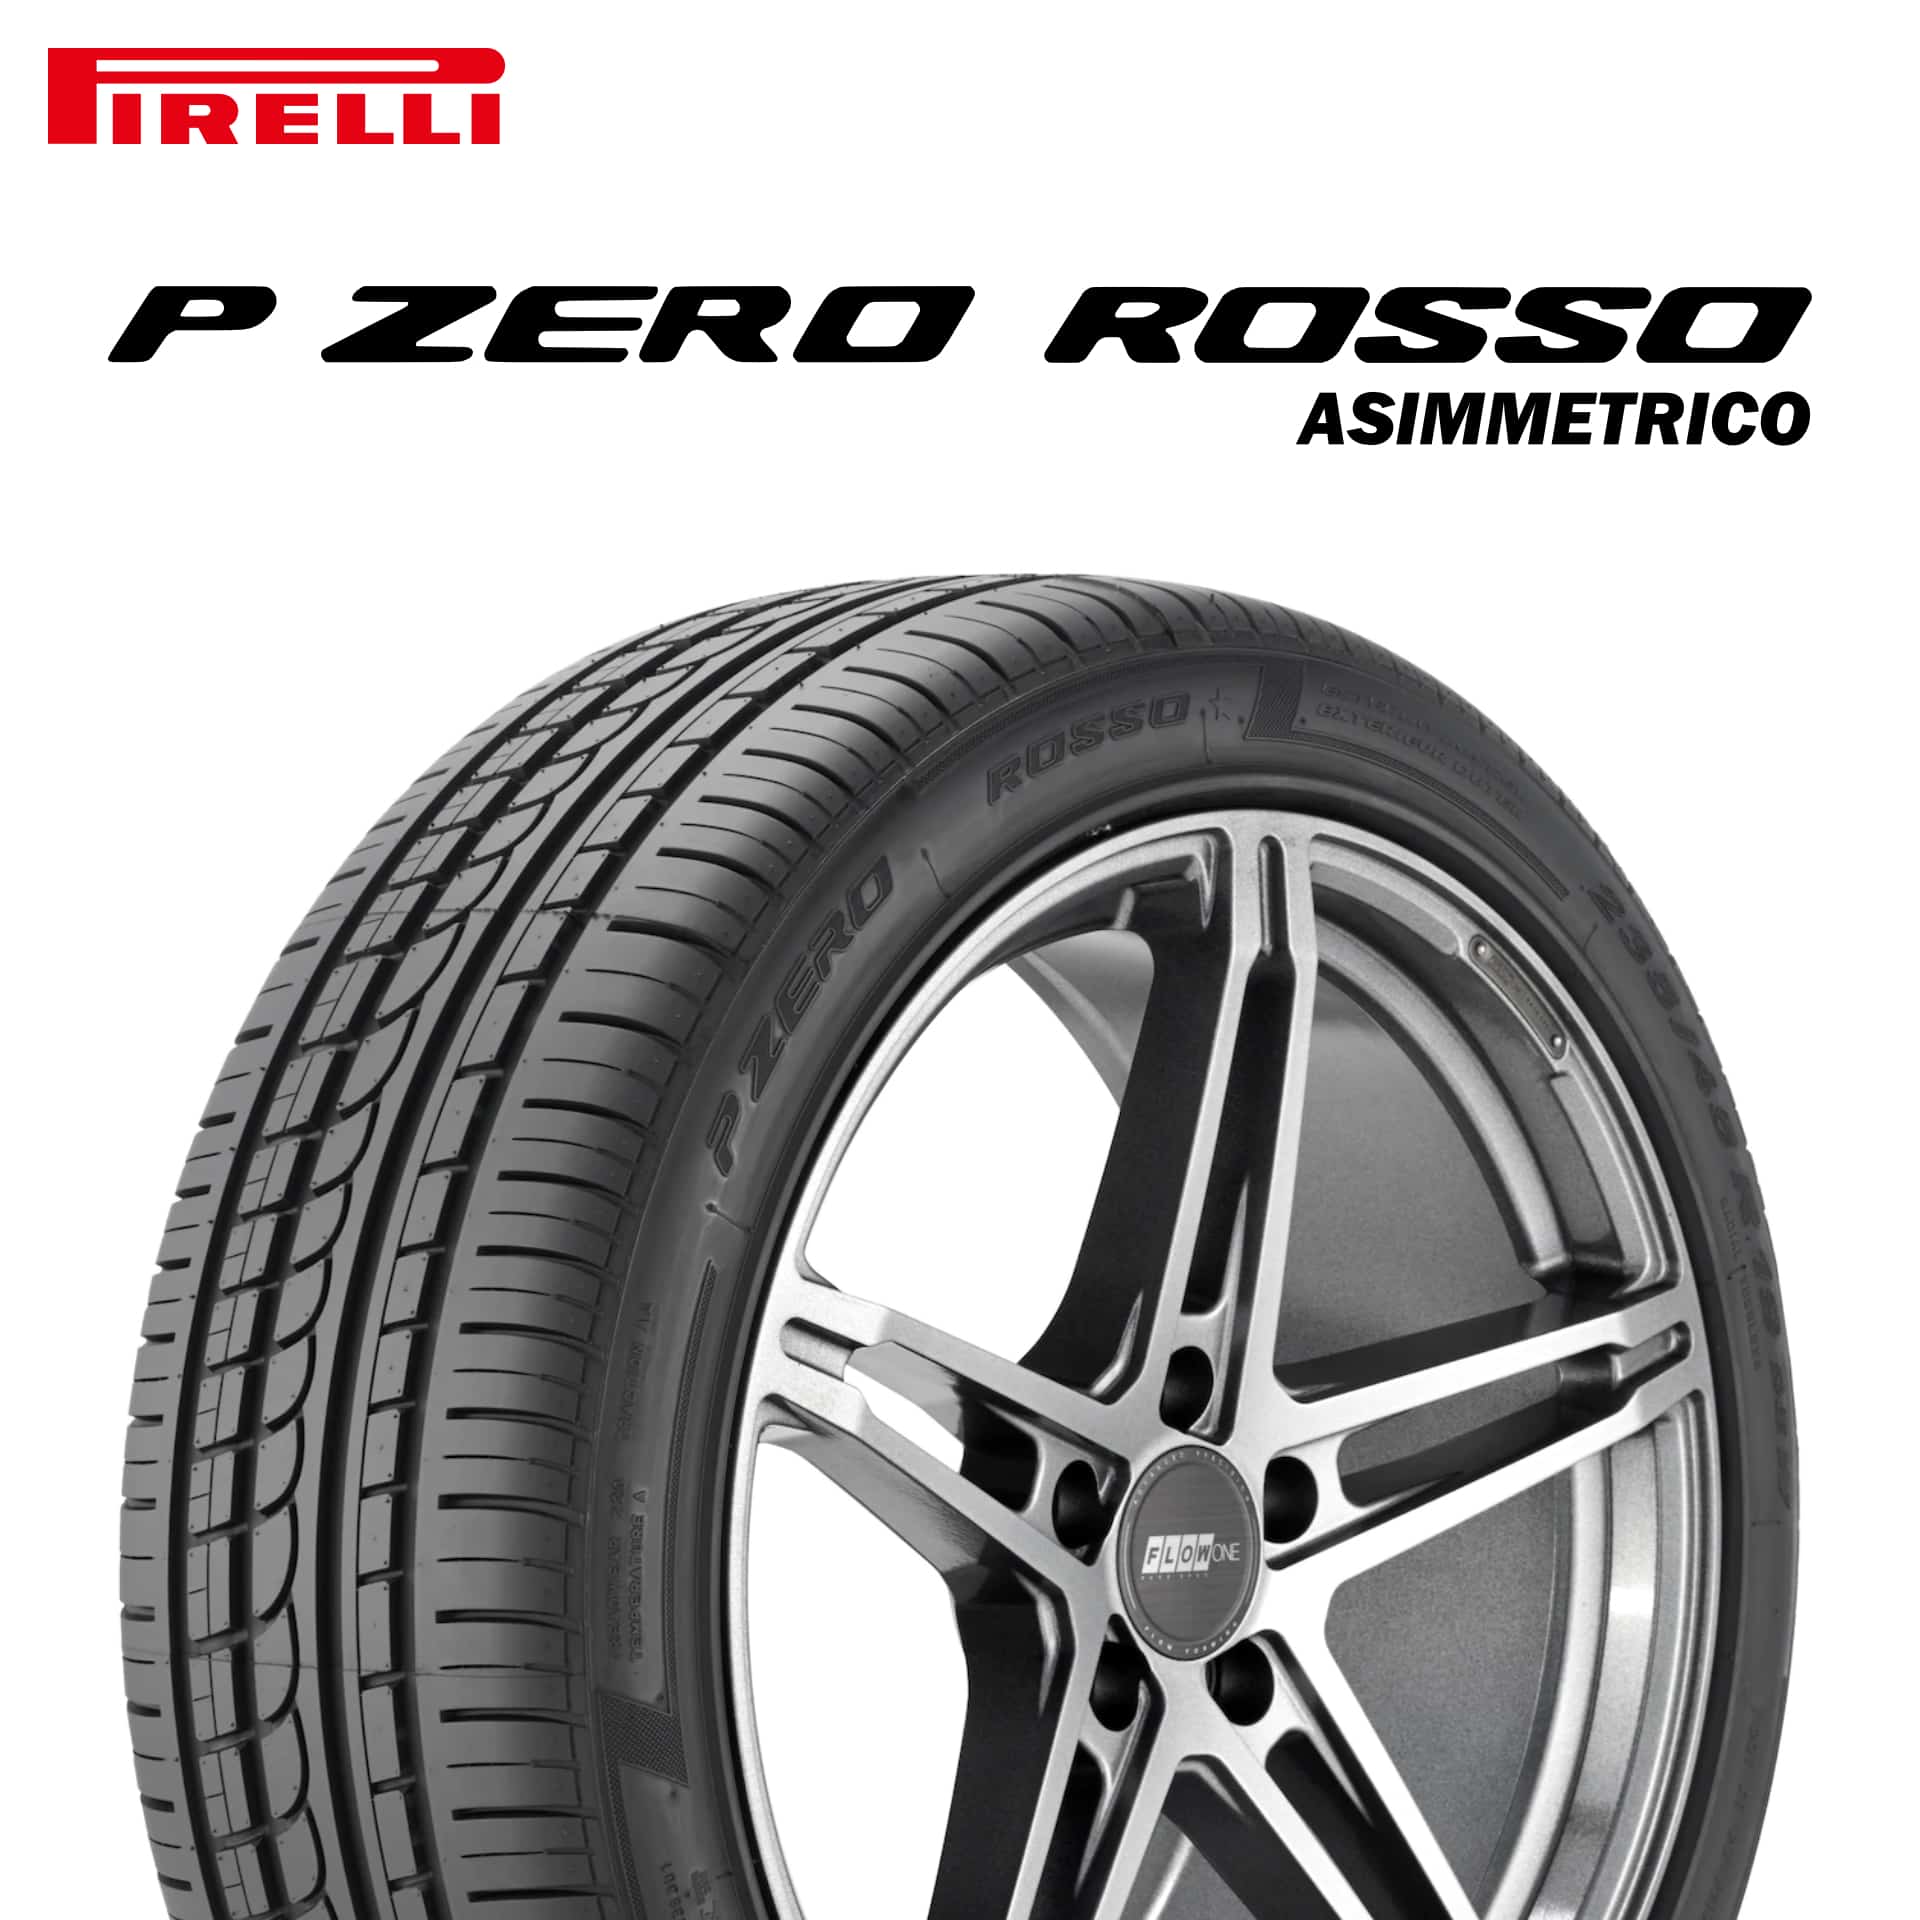 22年製 275/45R19 108Y XL N1 ピレリ P ZERO ROSSO ASIMMETRICO (ピーゼロ ロッソ アシンメトリコ) ポルシェ承認タイヤ 19インチ 新品